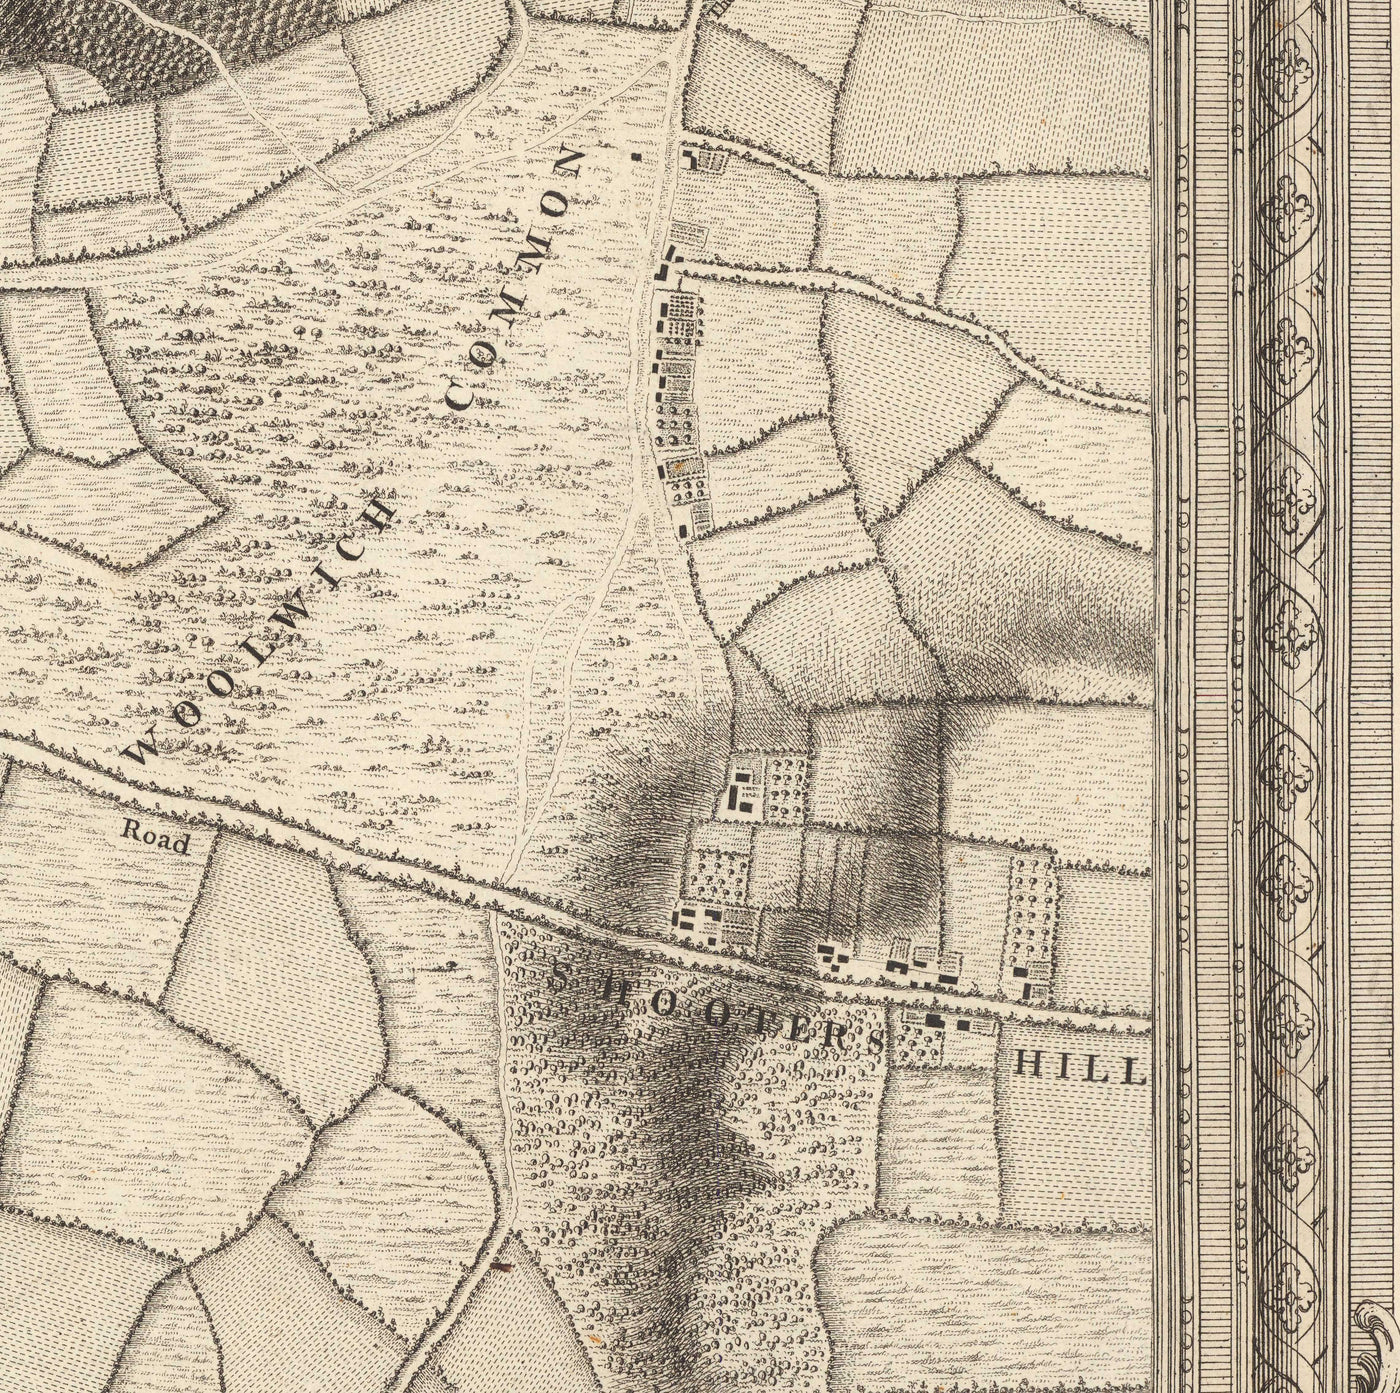 Antiguo mapa del sureste de Londres en 1746 por John Rocque - Lewisham, Woolwich, Greenwich, Eltham, Deptford, SE8, SE14, SE10, SE7, SE3, SE4, SE13